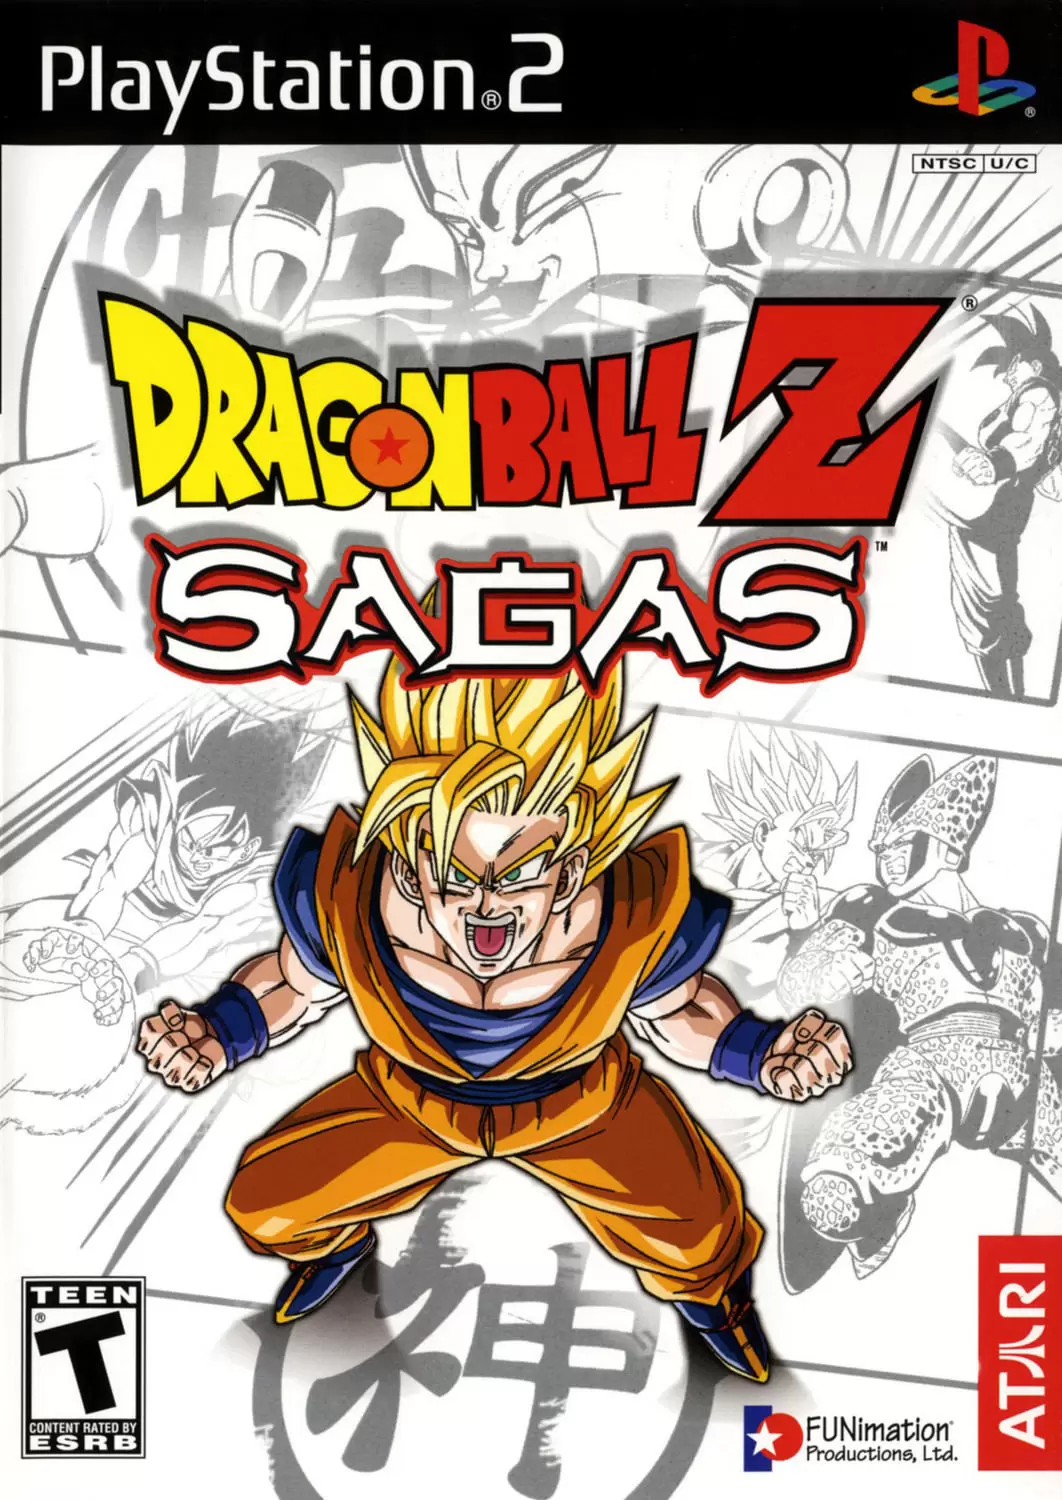 PS2 Games - Dragon Ball Z: Sagas